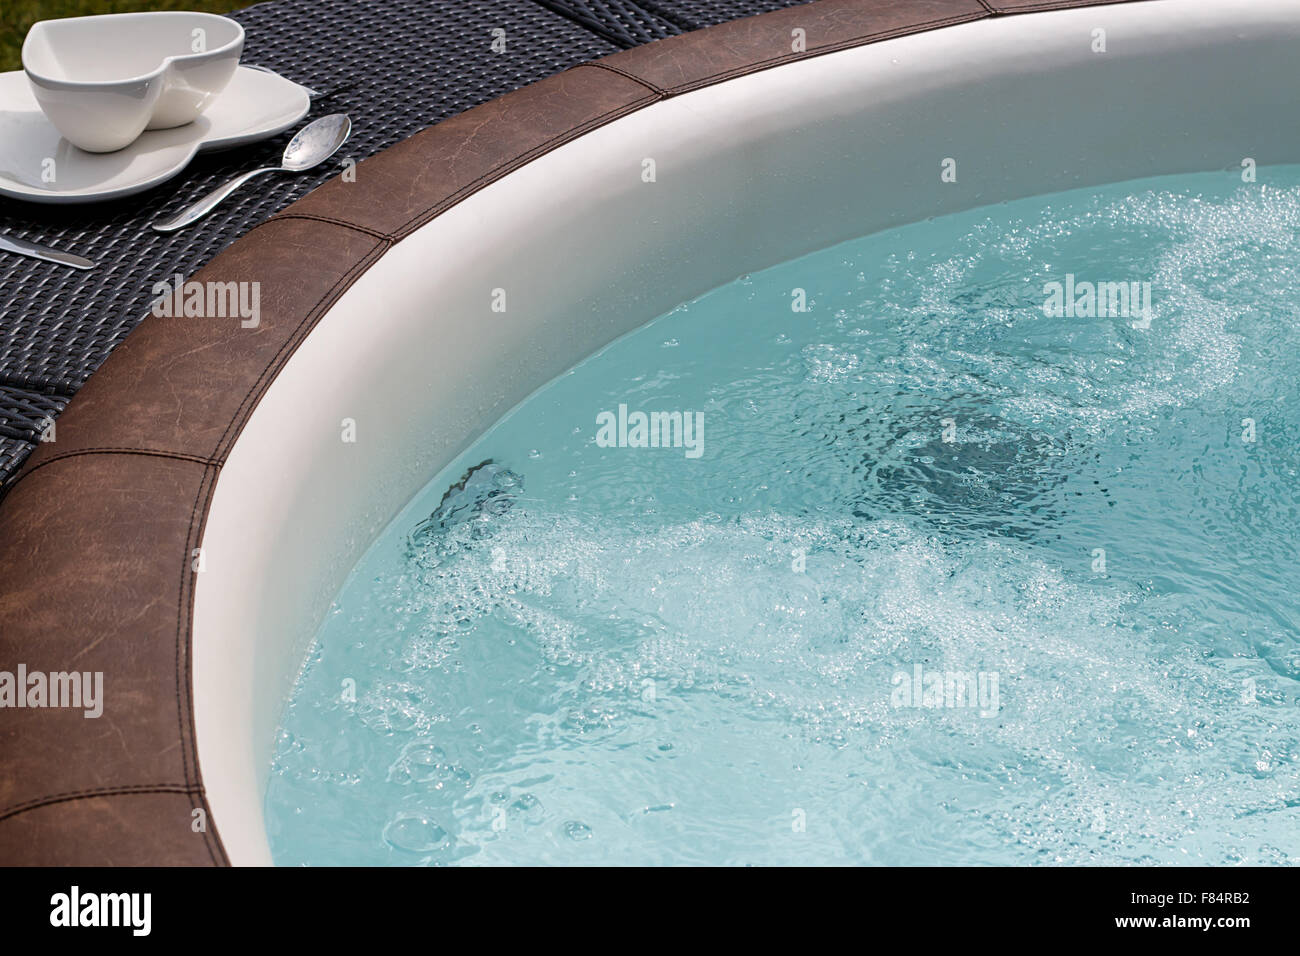 Standalone lussuosa vasca idromassaggio o vasca idromassaggio con acqua calda acqua in ebollizione Foto Stock